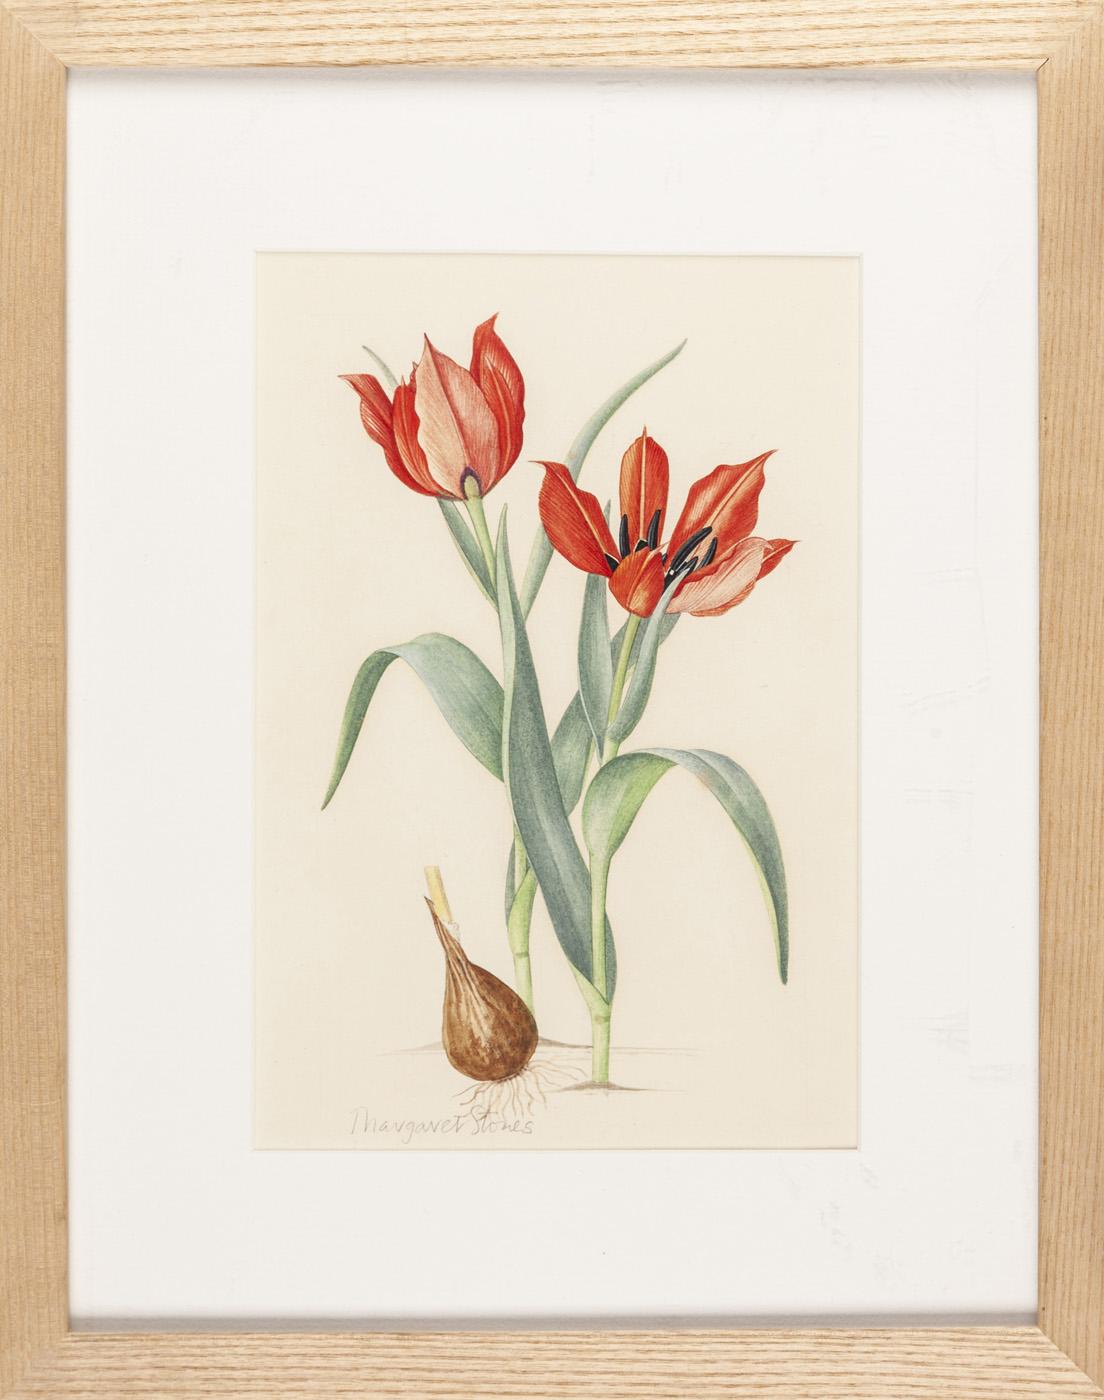 MARGARET STONES Tulips Eicheevi - Price Estimate: $400 - $600